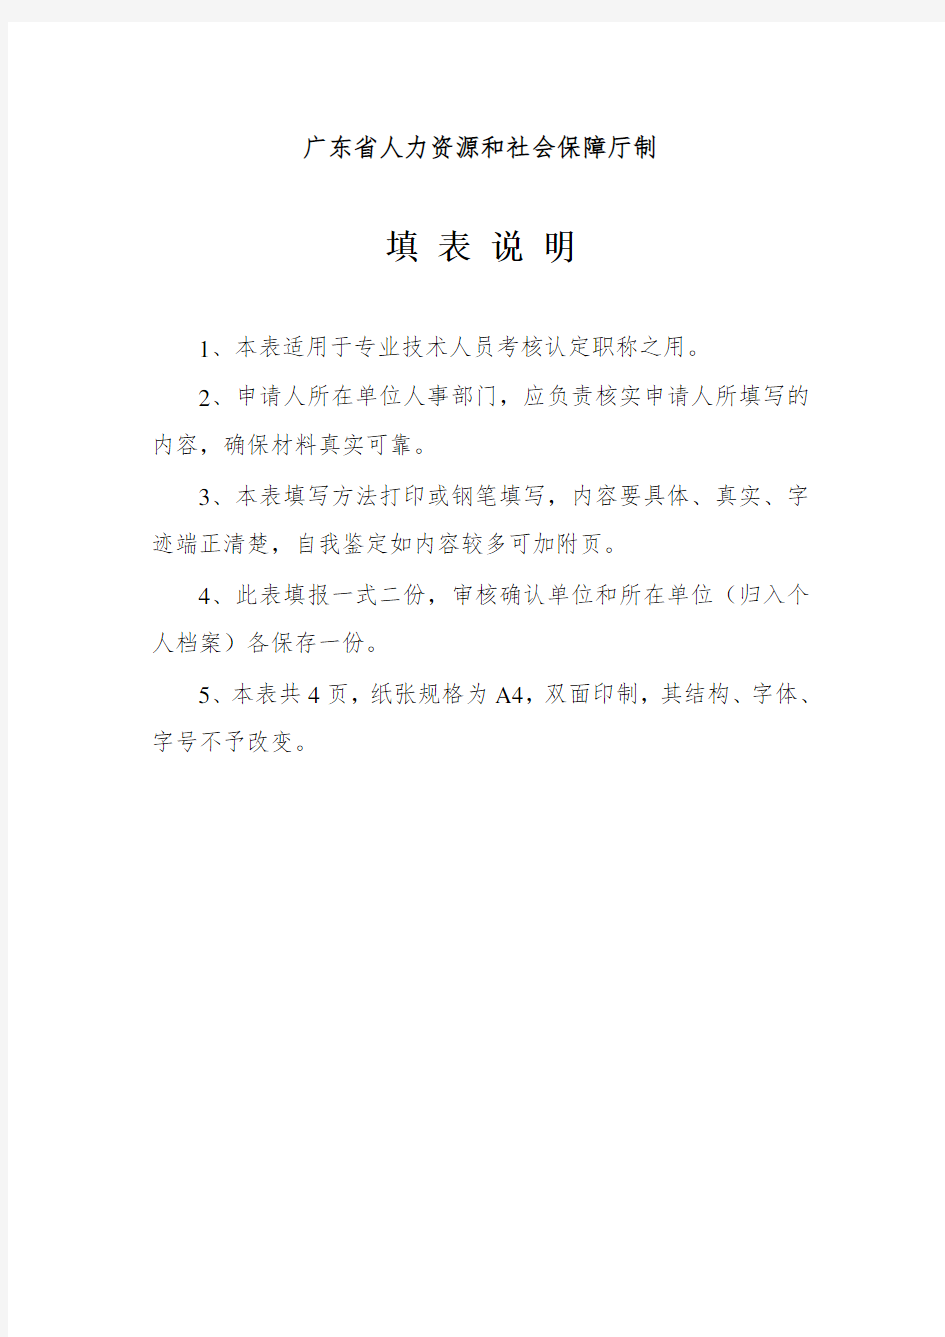 《广东省专业技术人员职称考核认定申报表》-张XX